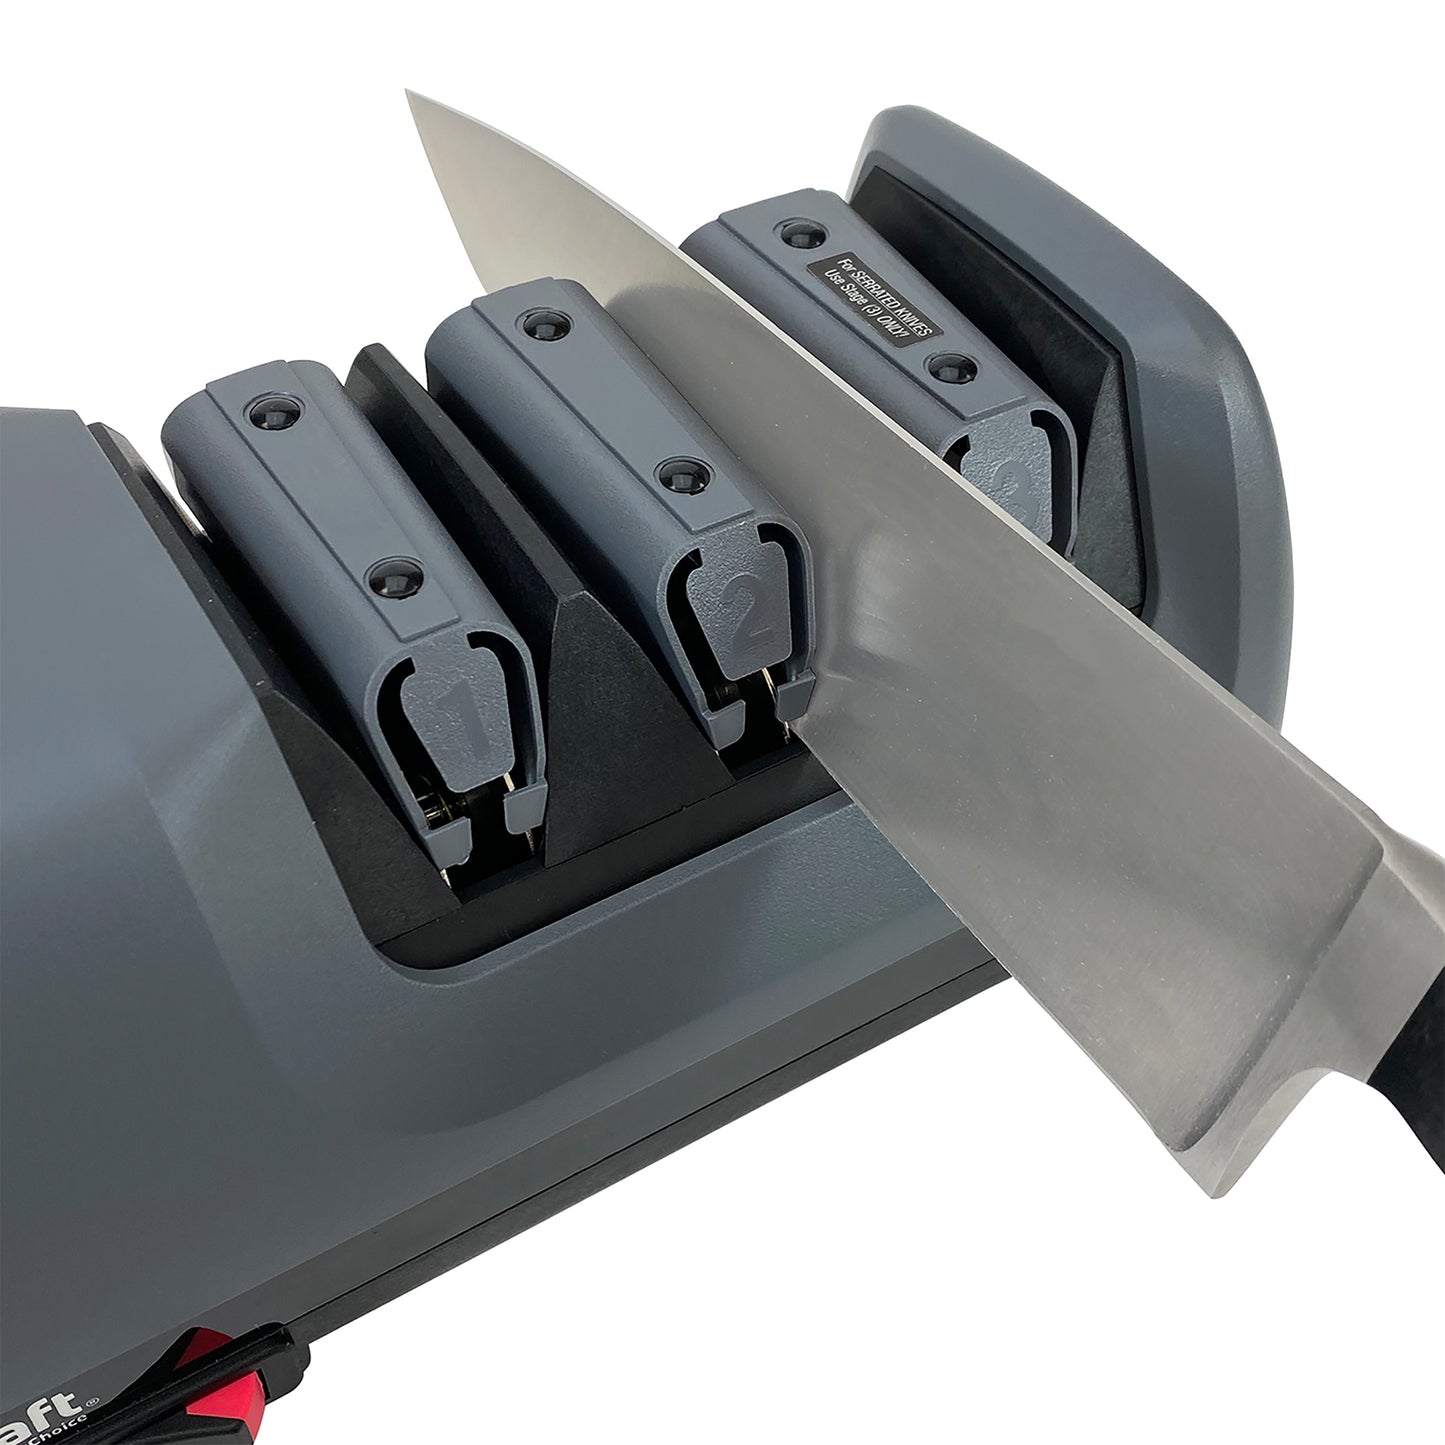 The Edgemaker Knife Sharpener Pro 331